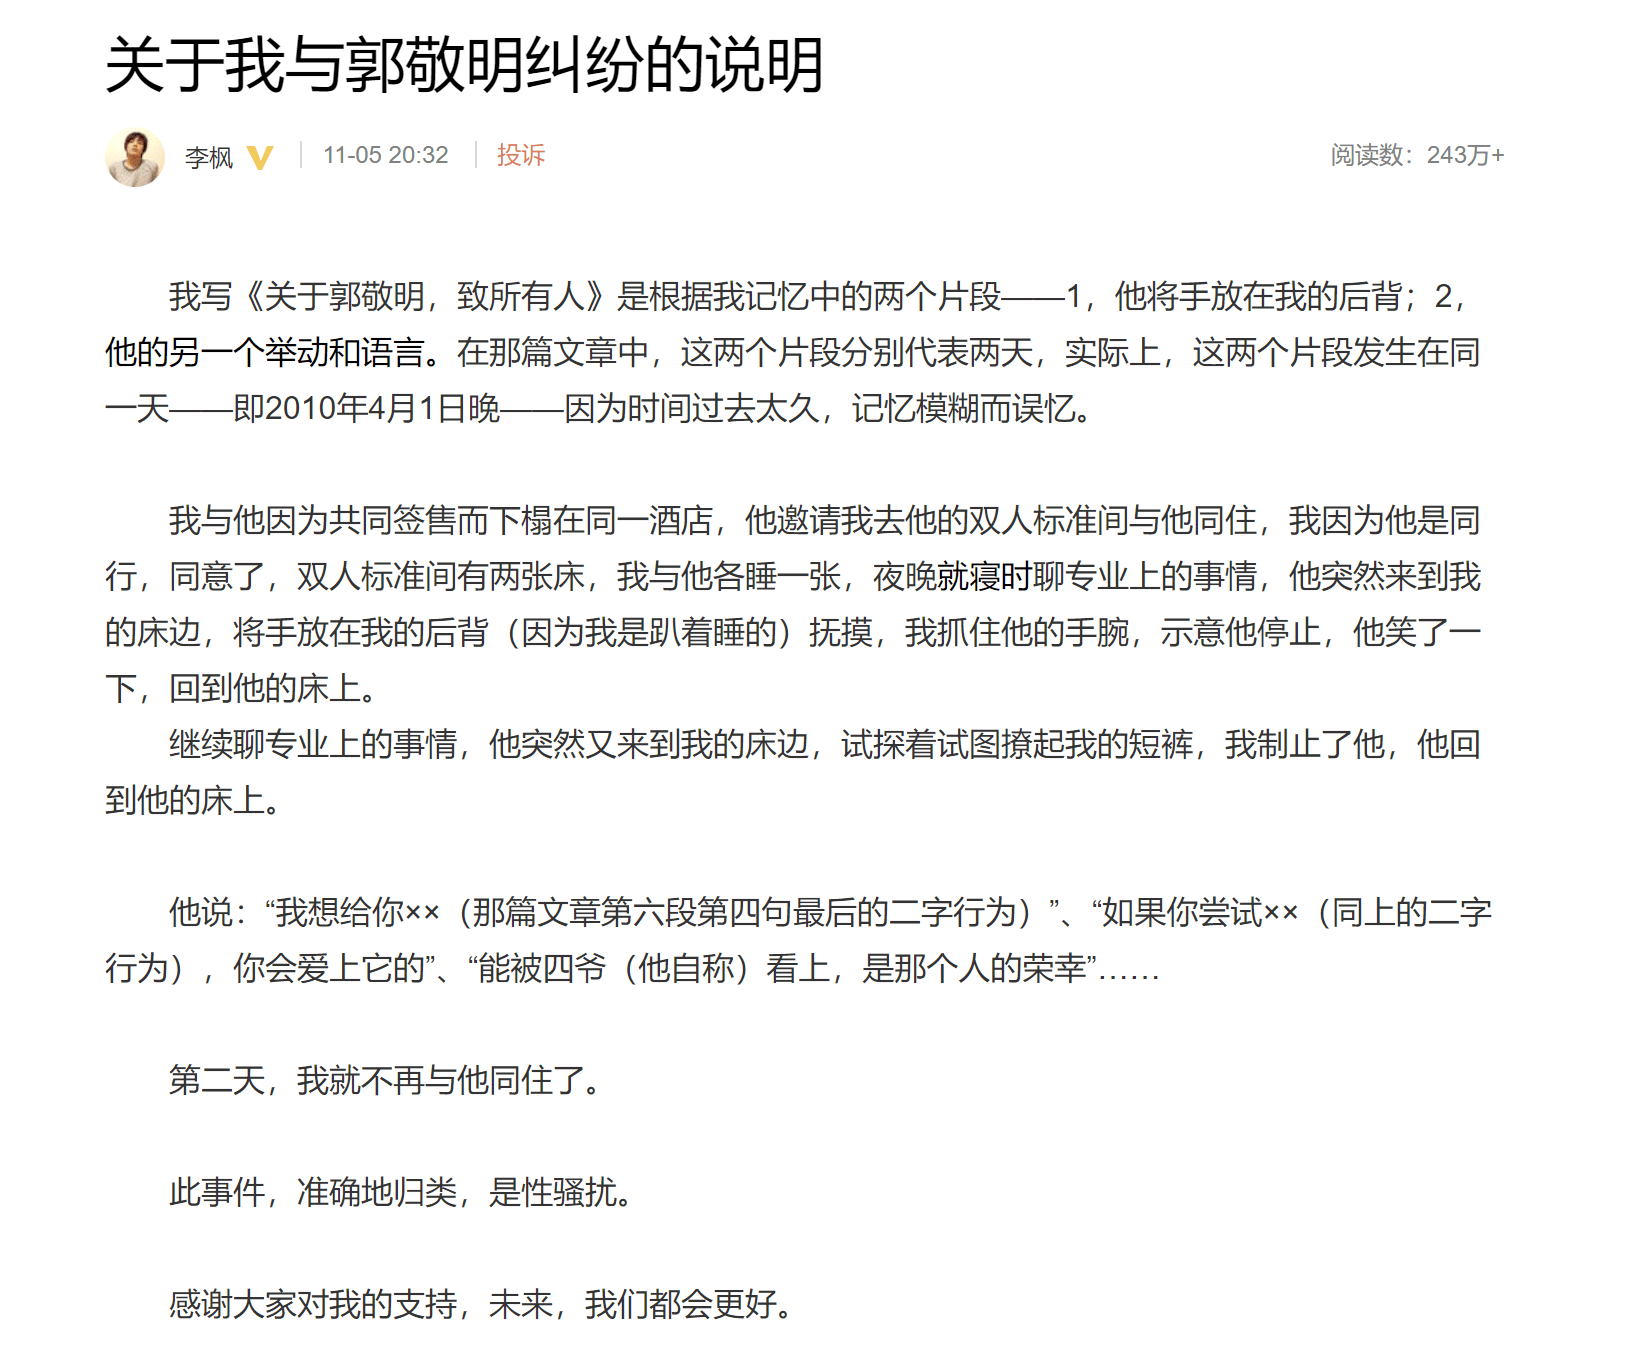 郭敬明时隔六年再被指控性骚扰：爆料细节劲爆，声称想要给予不正